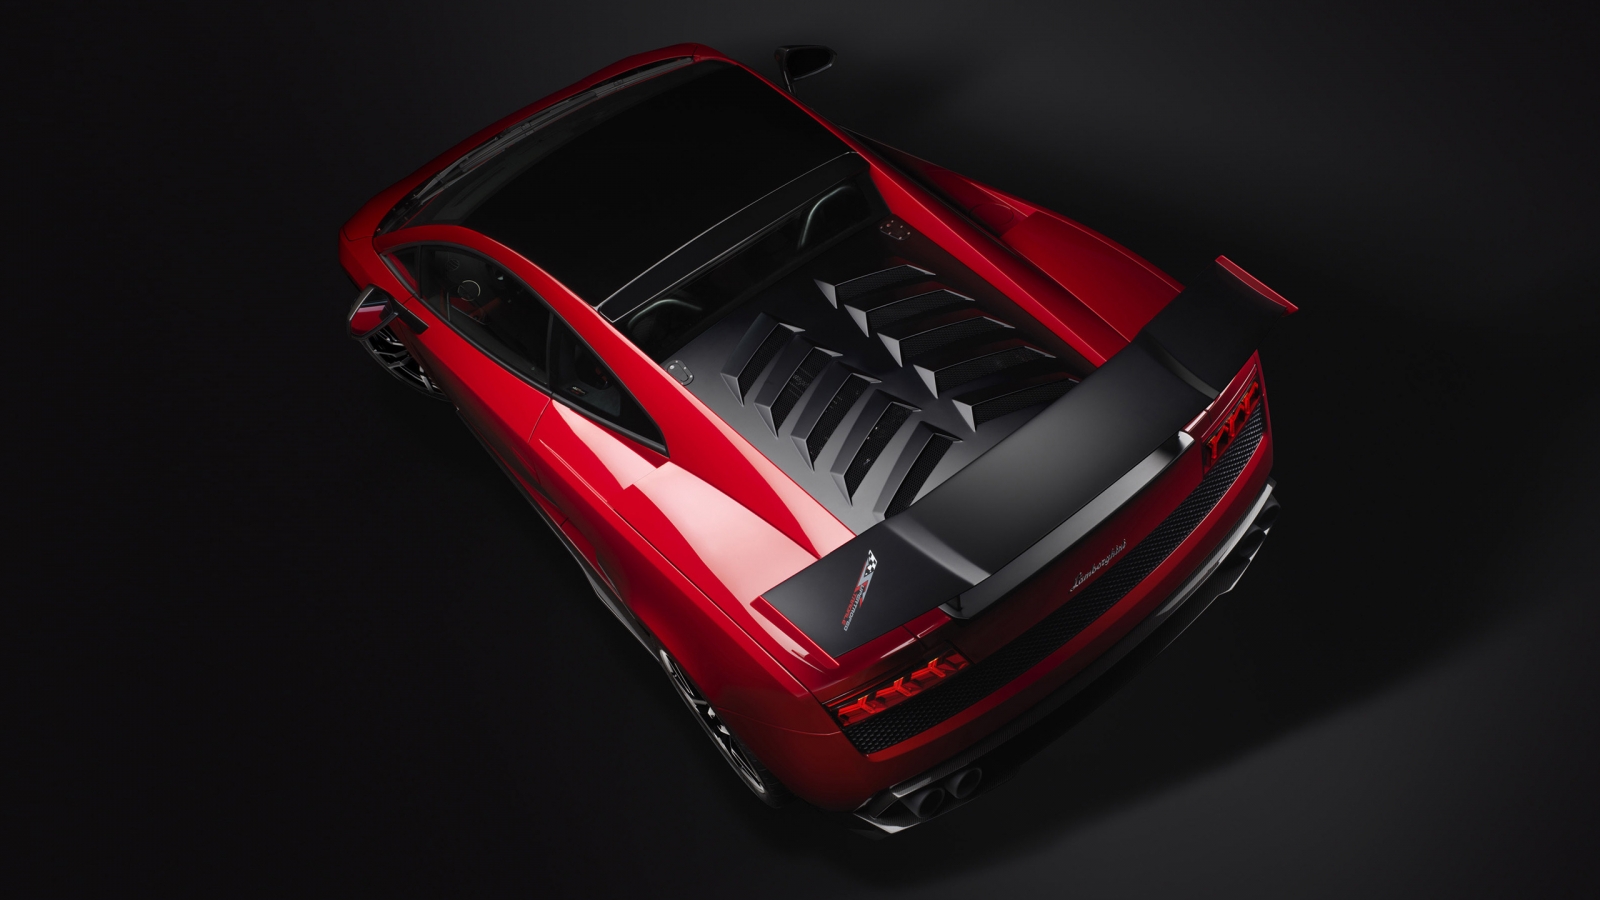 Red Lamborghini Gallardo Stradale for 1600 x 900 HDTV resolution